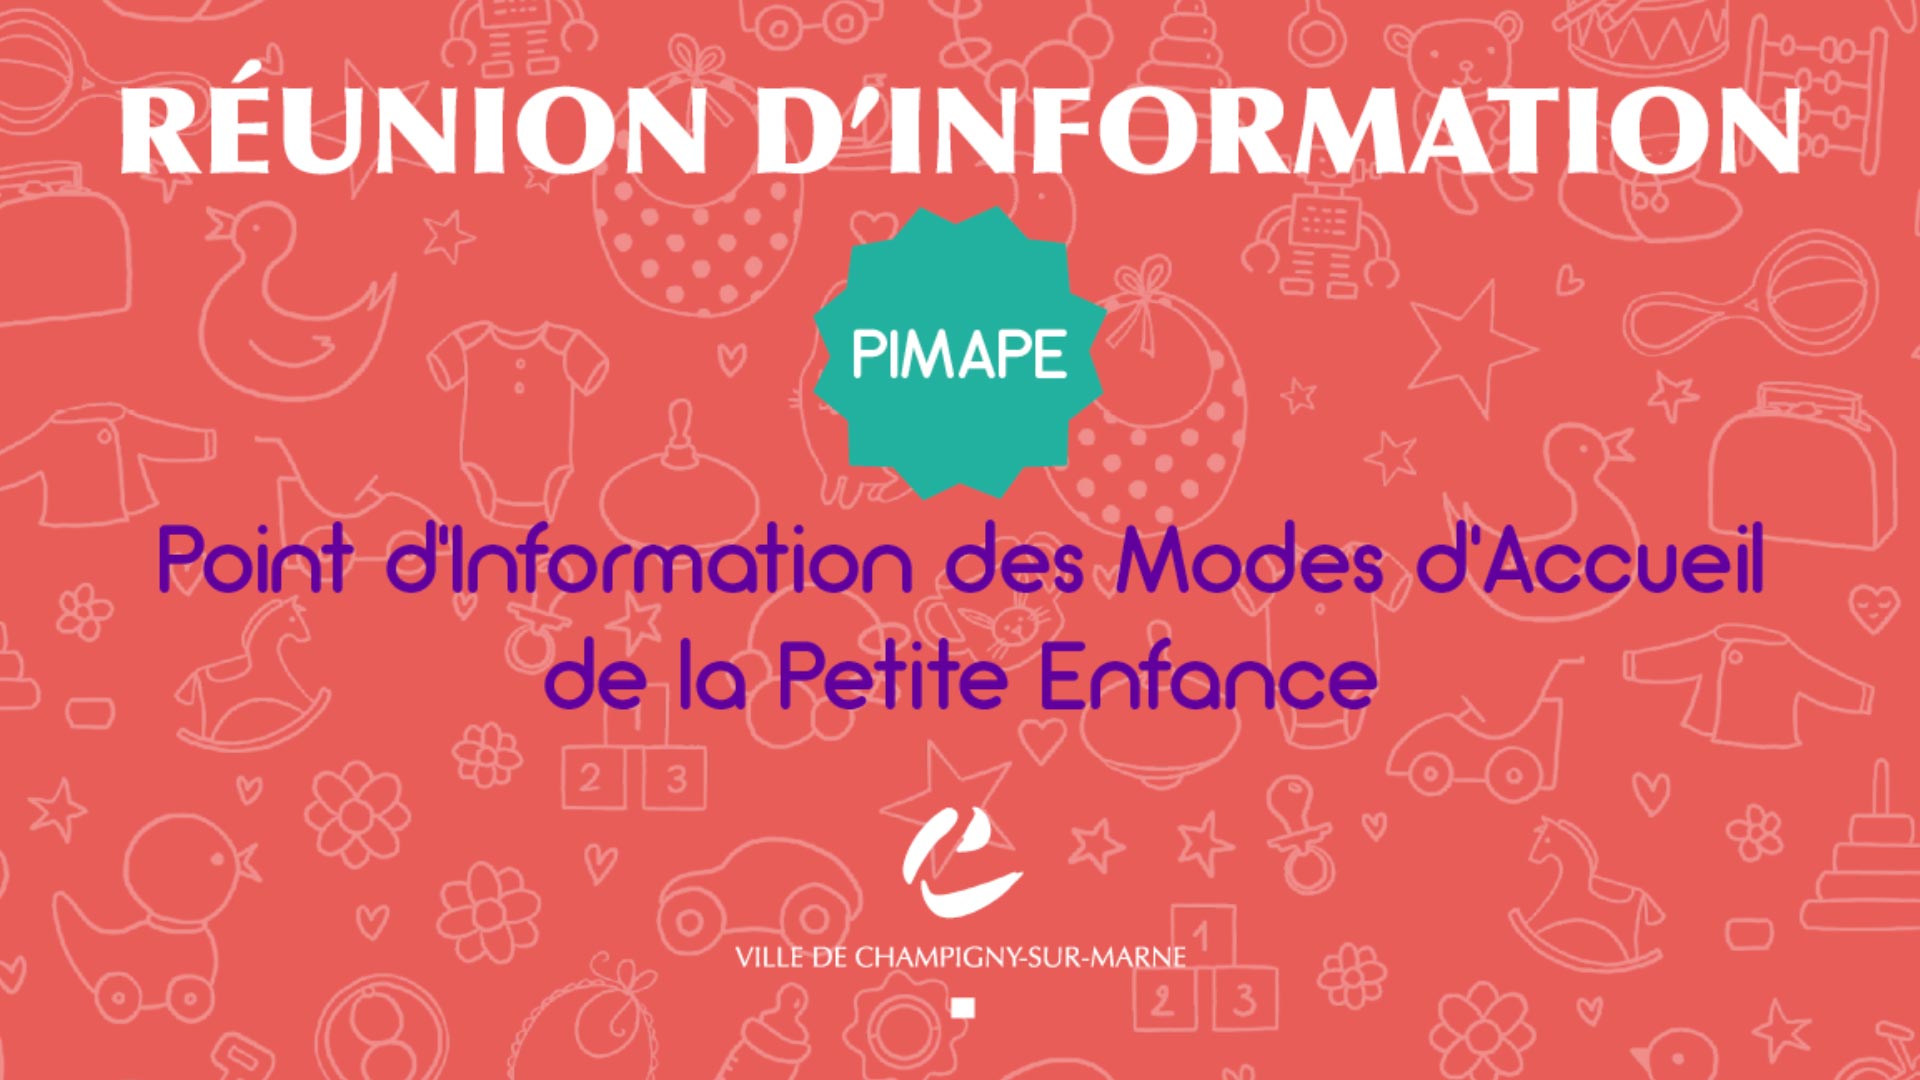 Point d'information des modes d'accueil de la petite enfance (PIMAPE) : réunion d'information